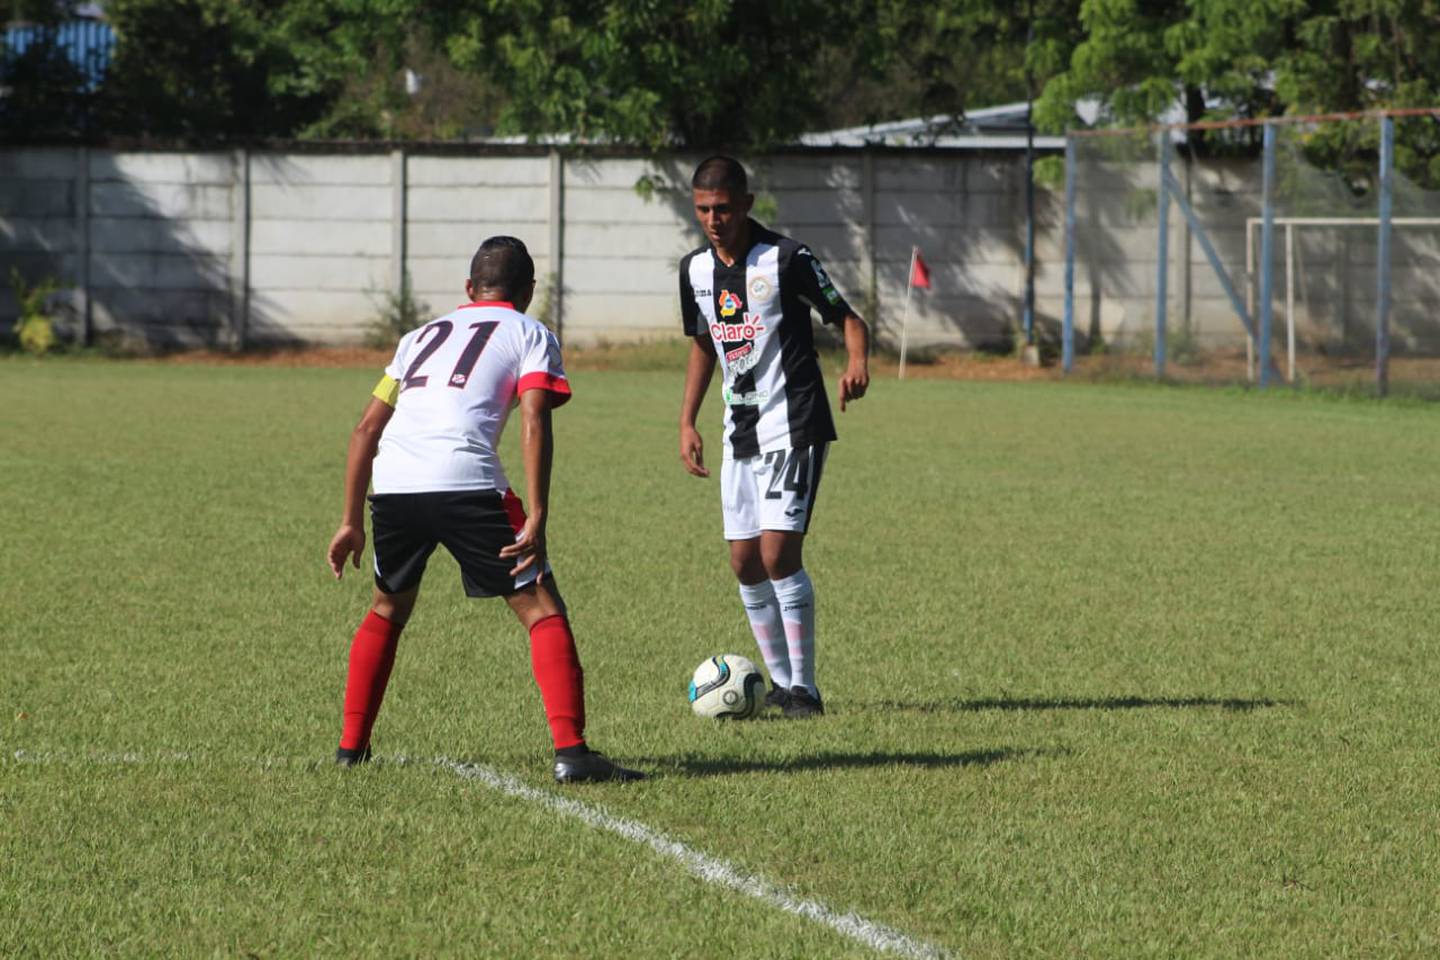 Sebastián Barquero (24) en un juego de la liga de Nicaragua. Fotografía: Cortesía